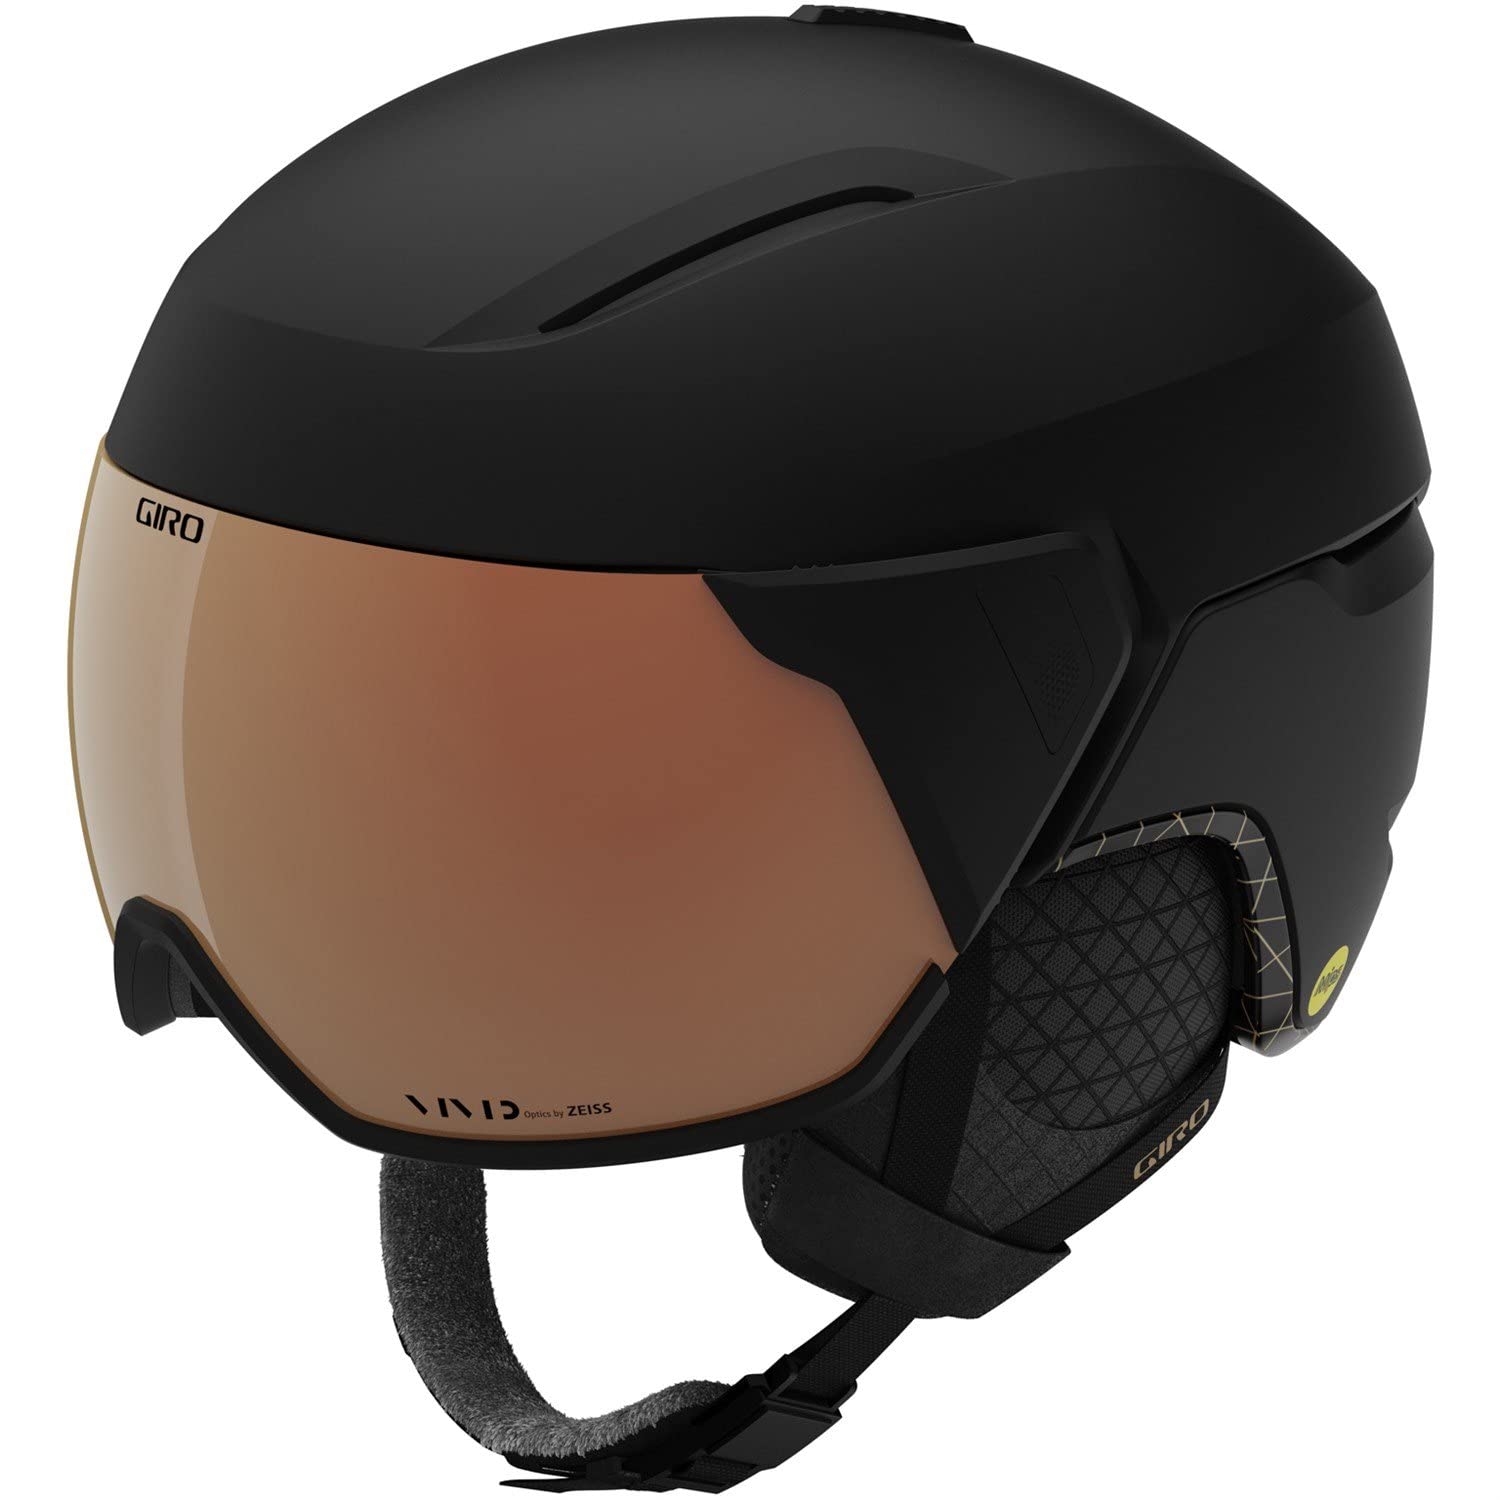 Giro Aria Spherical MIPS Ski Helmet - Snowboarding Helmet for Women with Integrated Visor - Matte Black - M 55.5-59cm並行